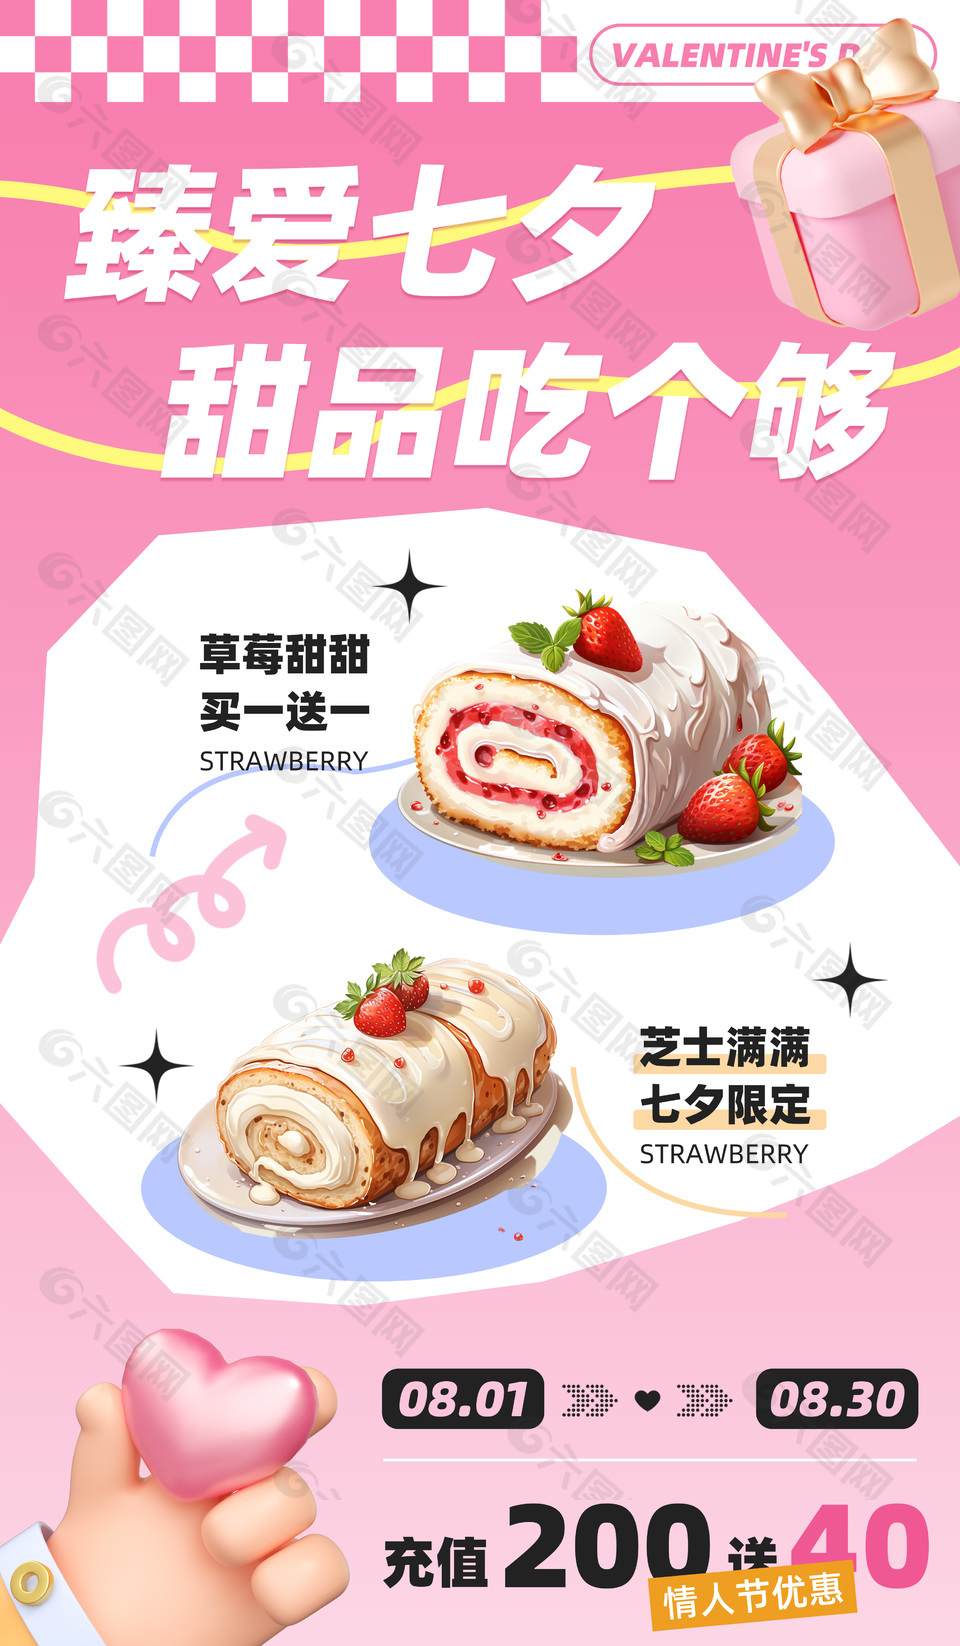 七夕情人节甜品下午茶限定活动宣传单设计